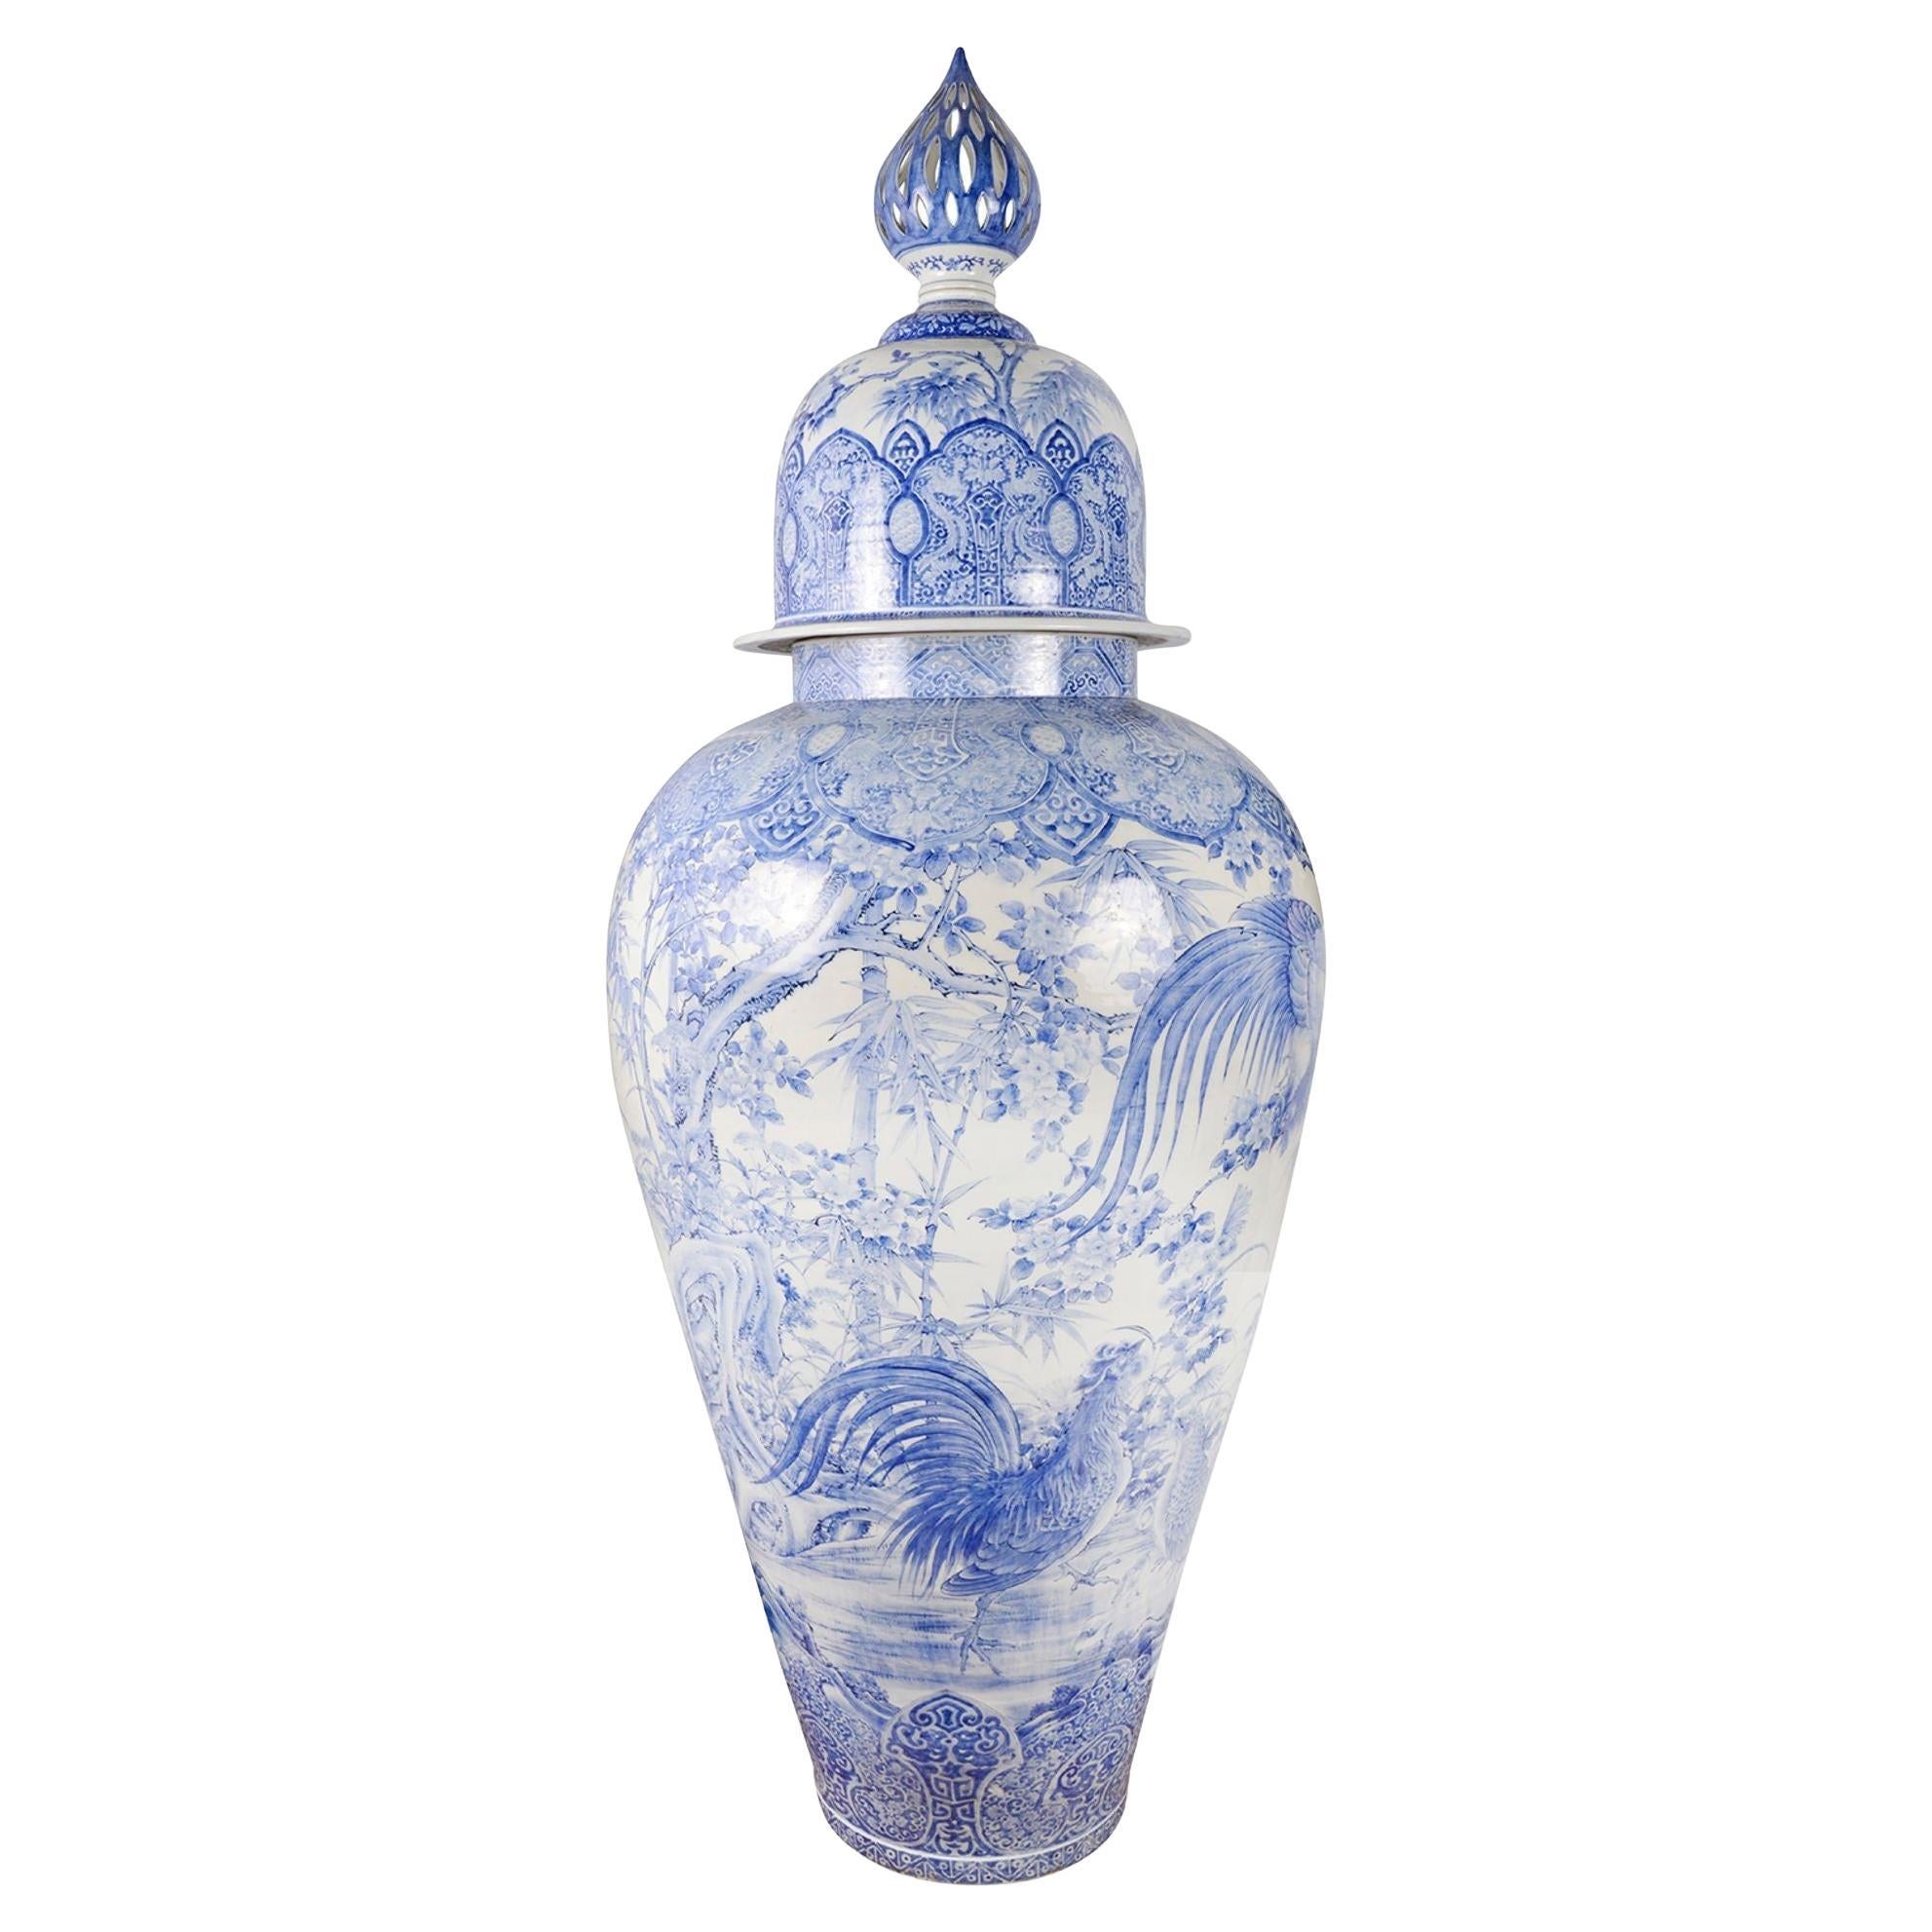 Monumental 19th Century Japanese Blue and White Lidded Palace Vase